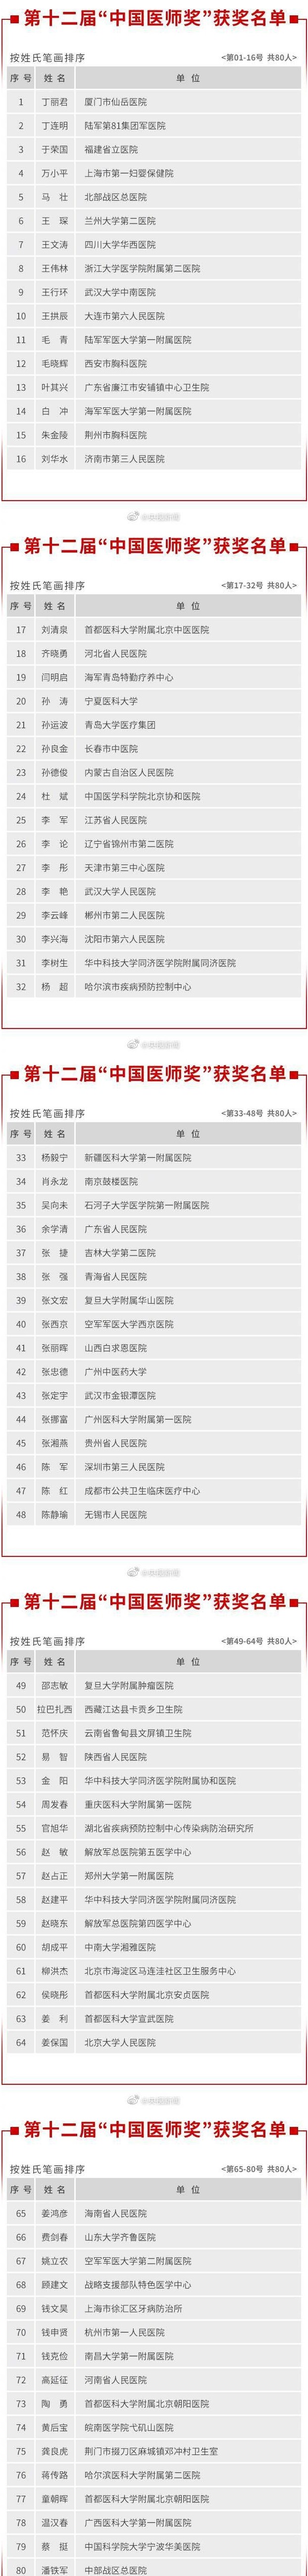 【实至名归】张文宏等80名医生获中国医师奖 附详细名单